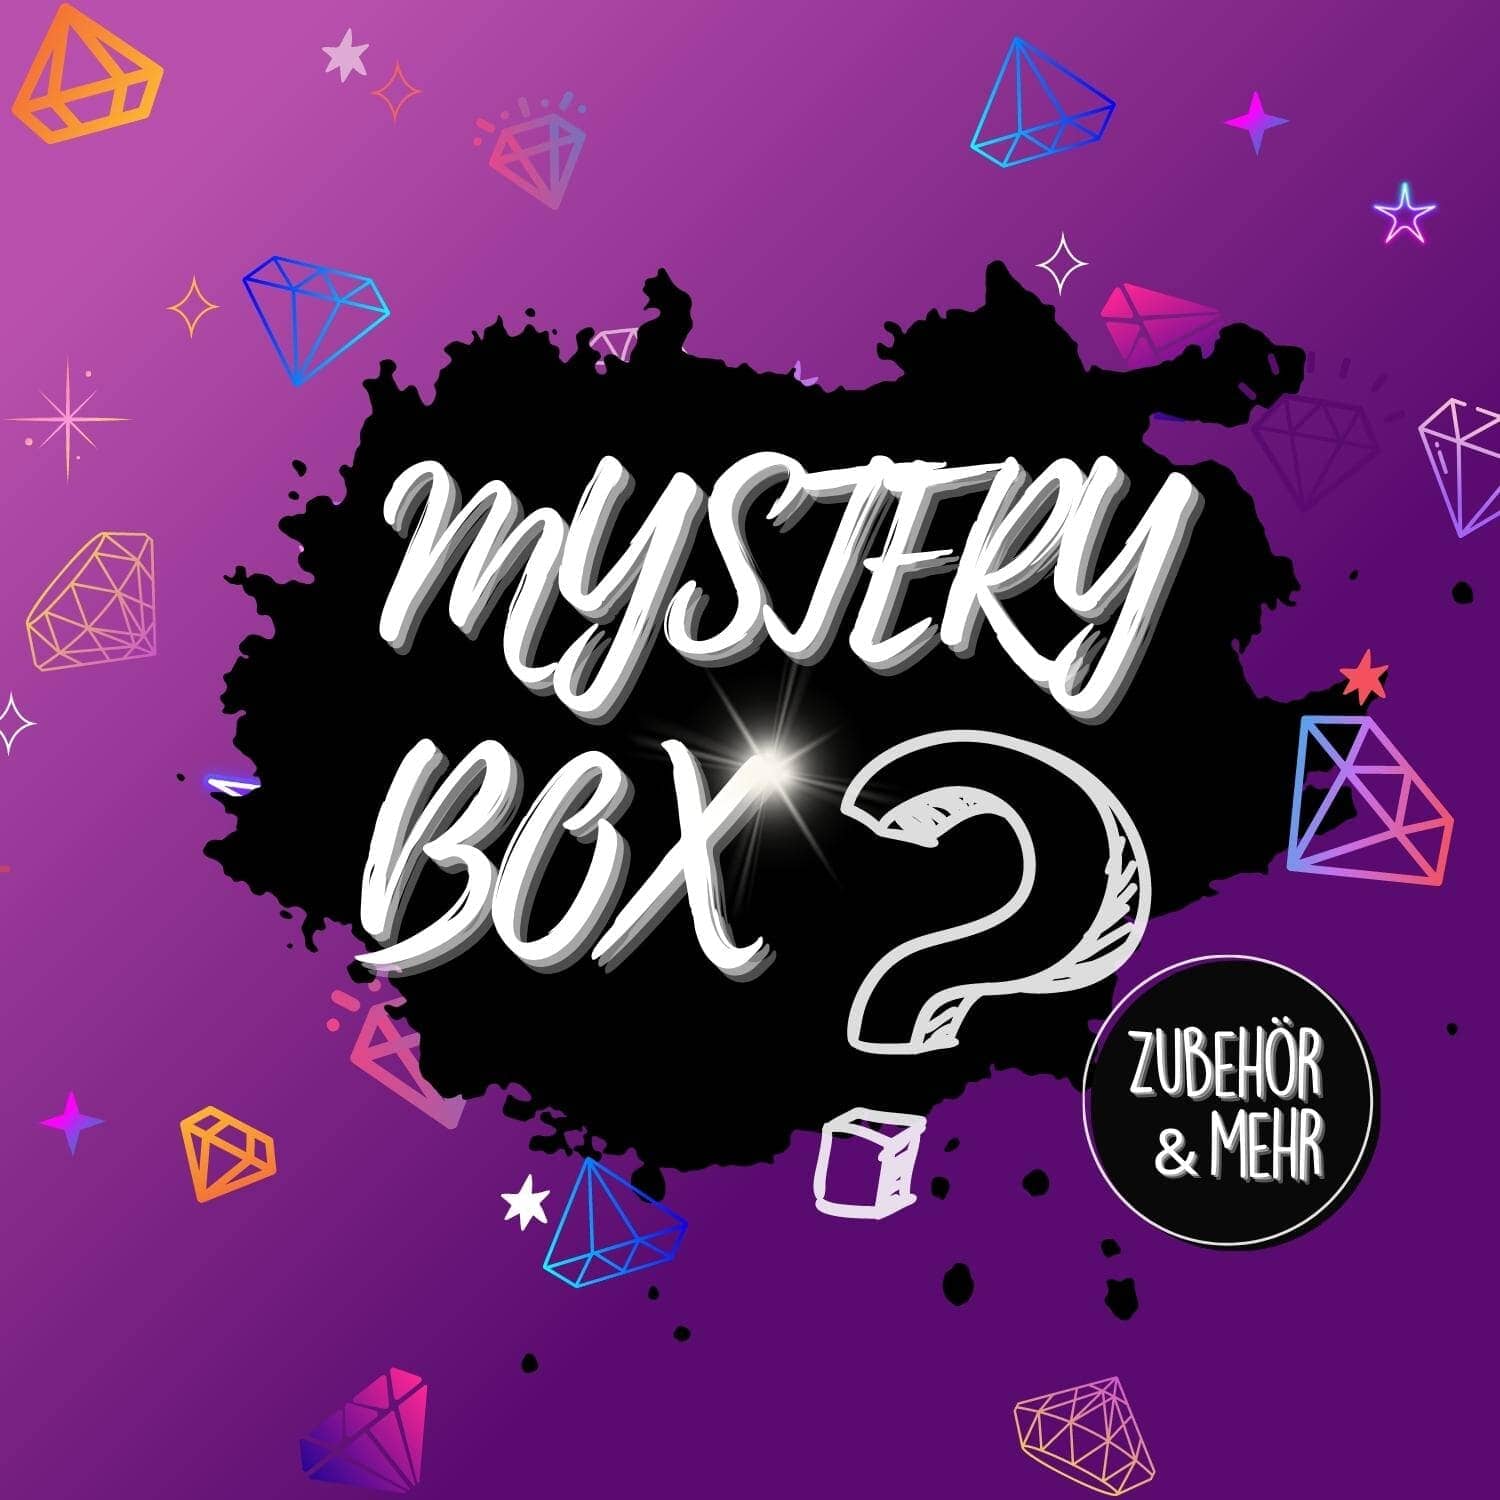 MysteryBox #7 - Zubehör & Mehr (4-6 Artikel)